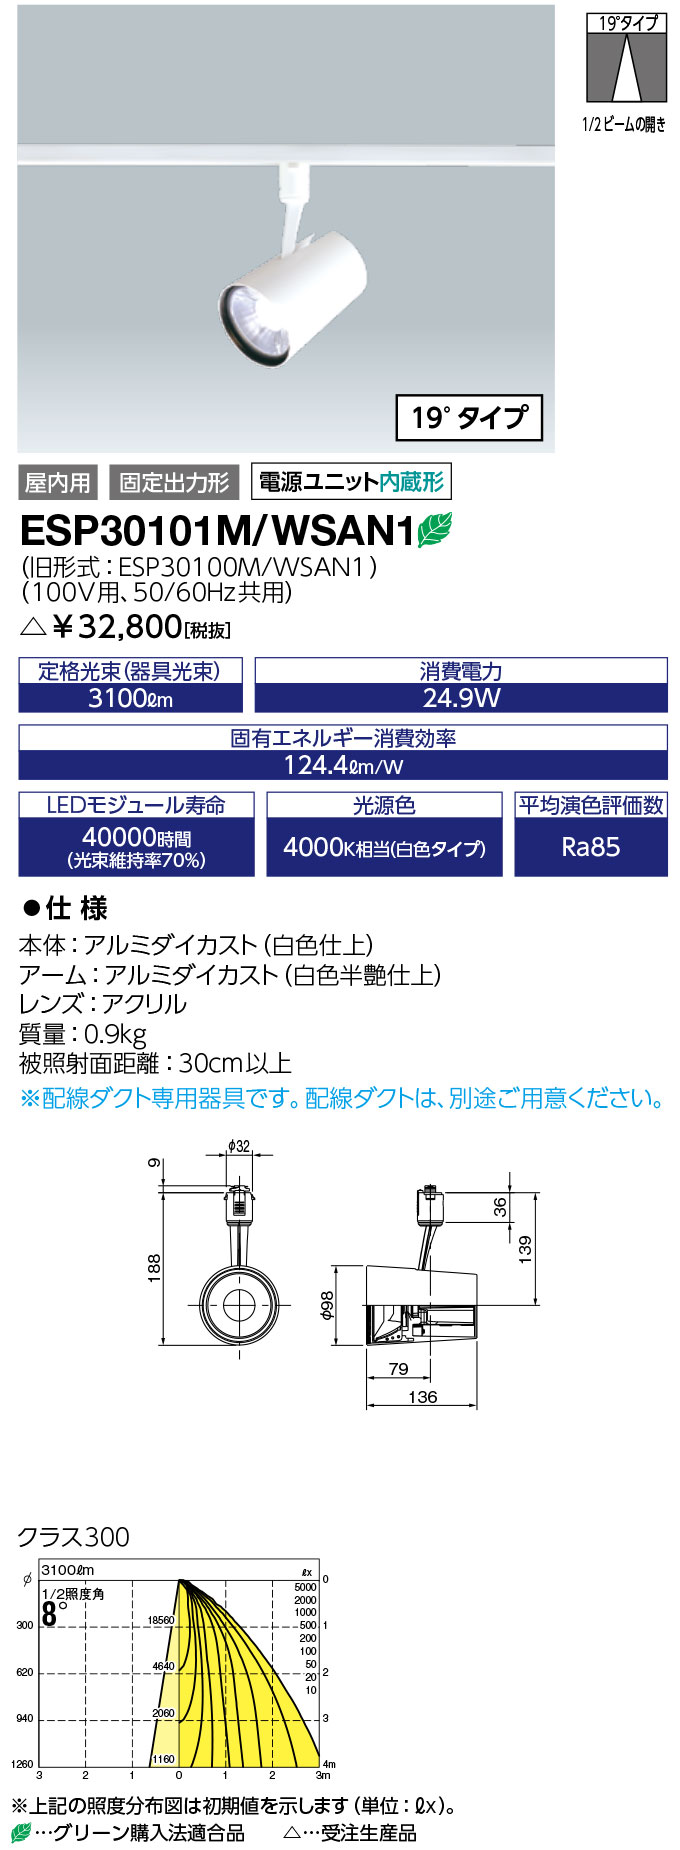 【楽天市場】送料無料 ポイント2倍 岩崎電気 ESP30101M/WSAN1 LEDioc LEDスポットライト (COBタイプ) 一般形